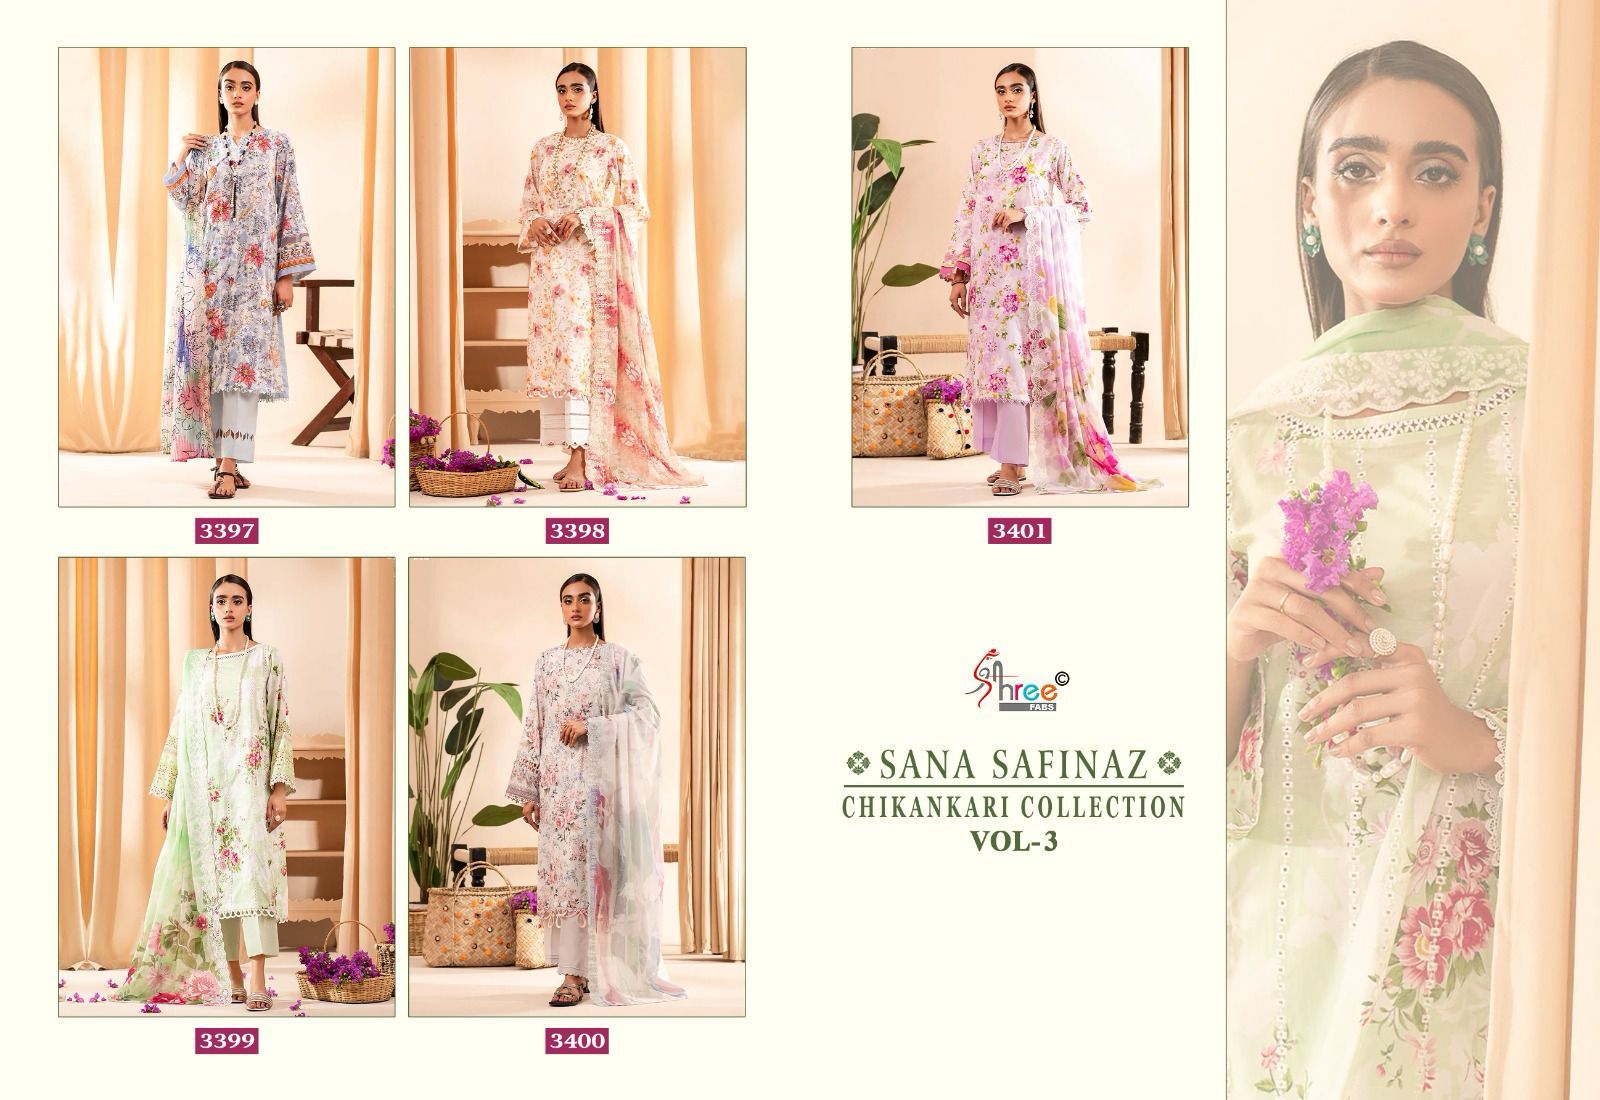 Shree Sana Safinaz Chikankari Vol 3 collection 4